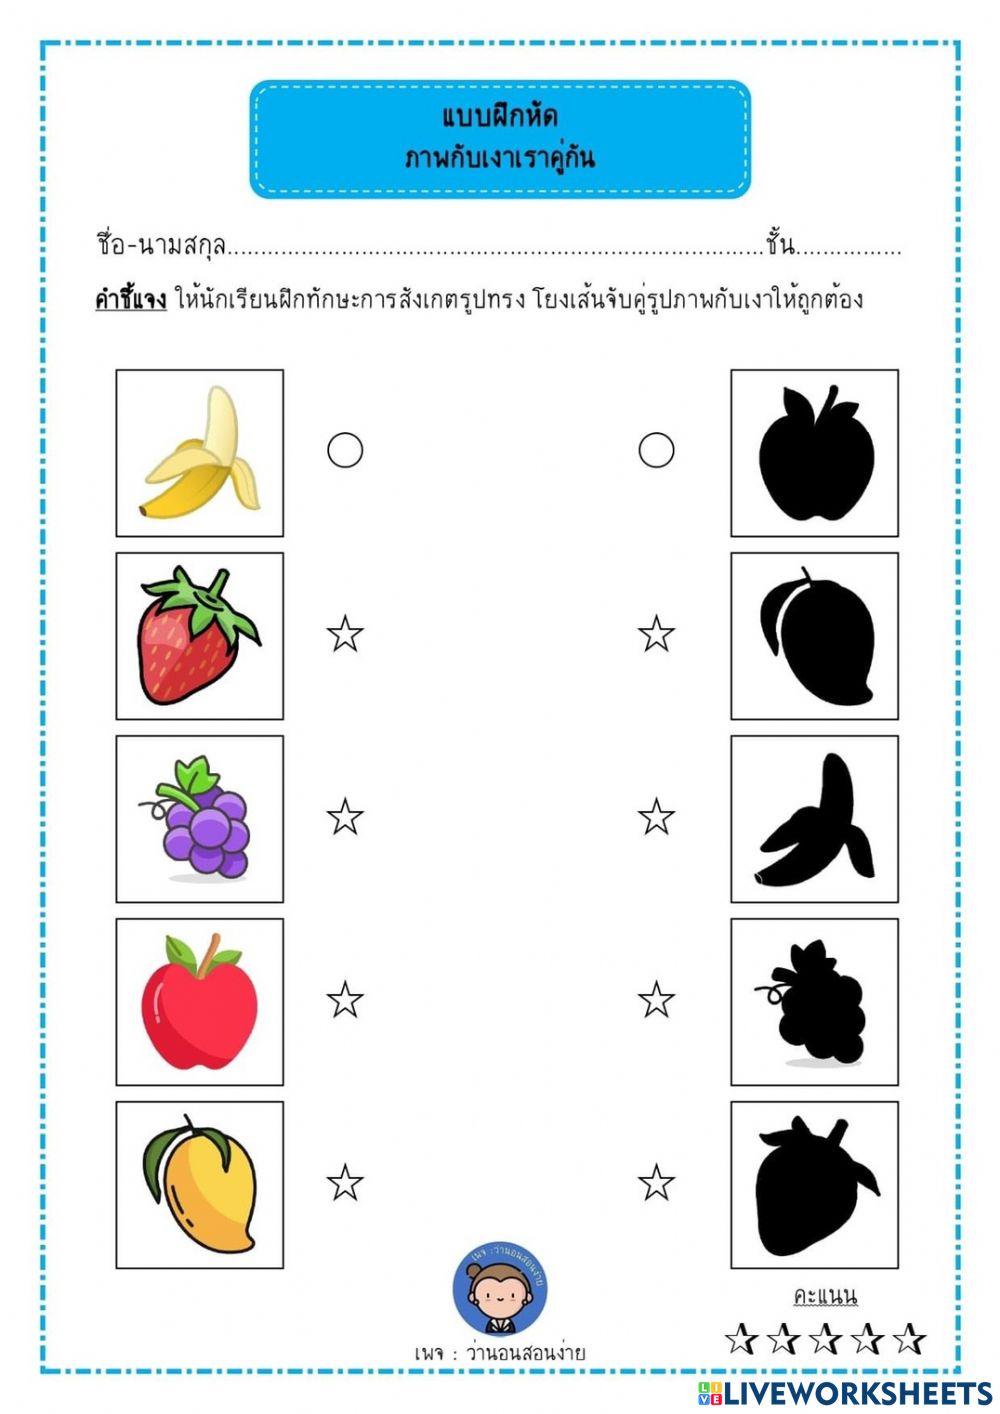 Worksheet 1: Fruits